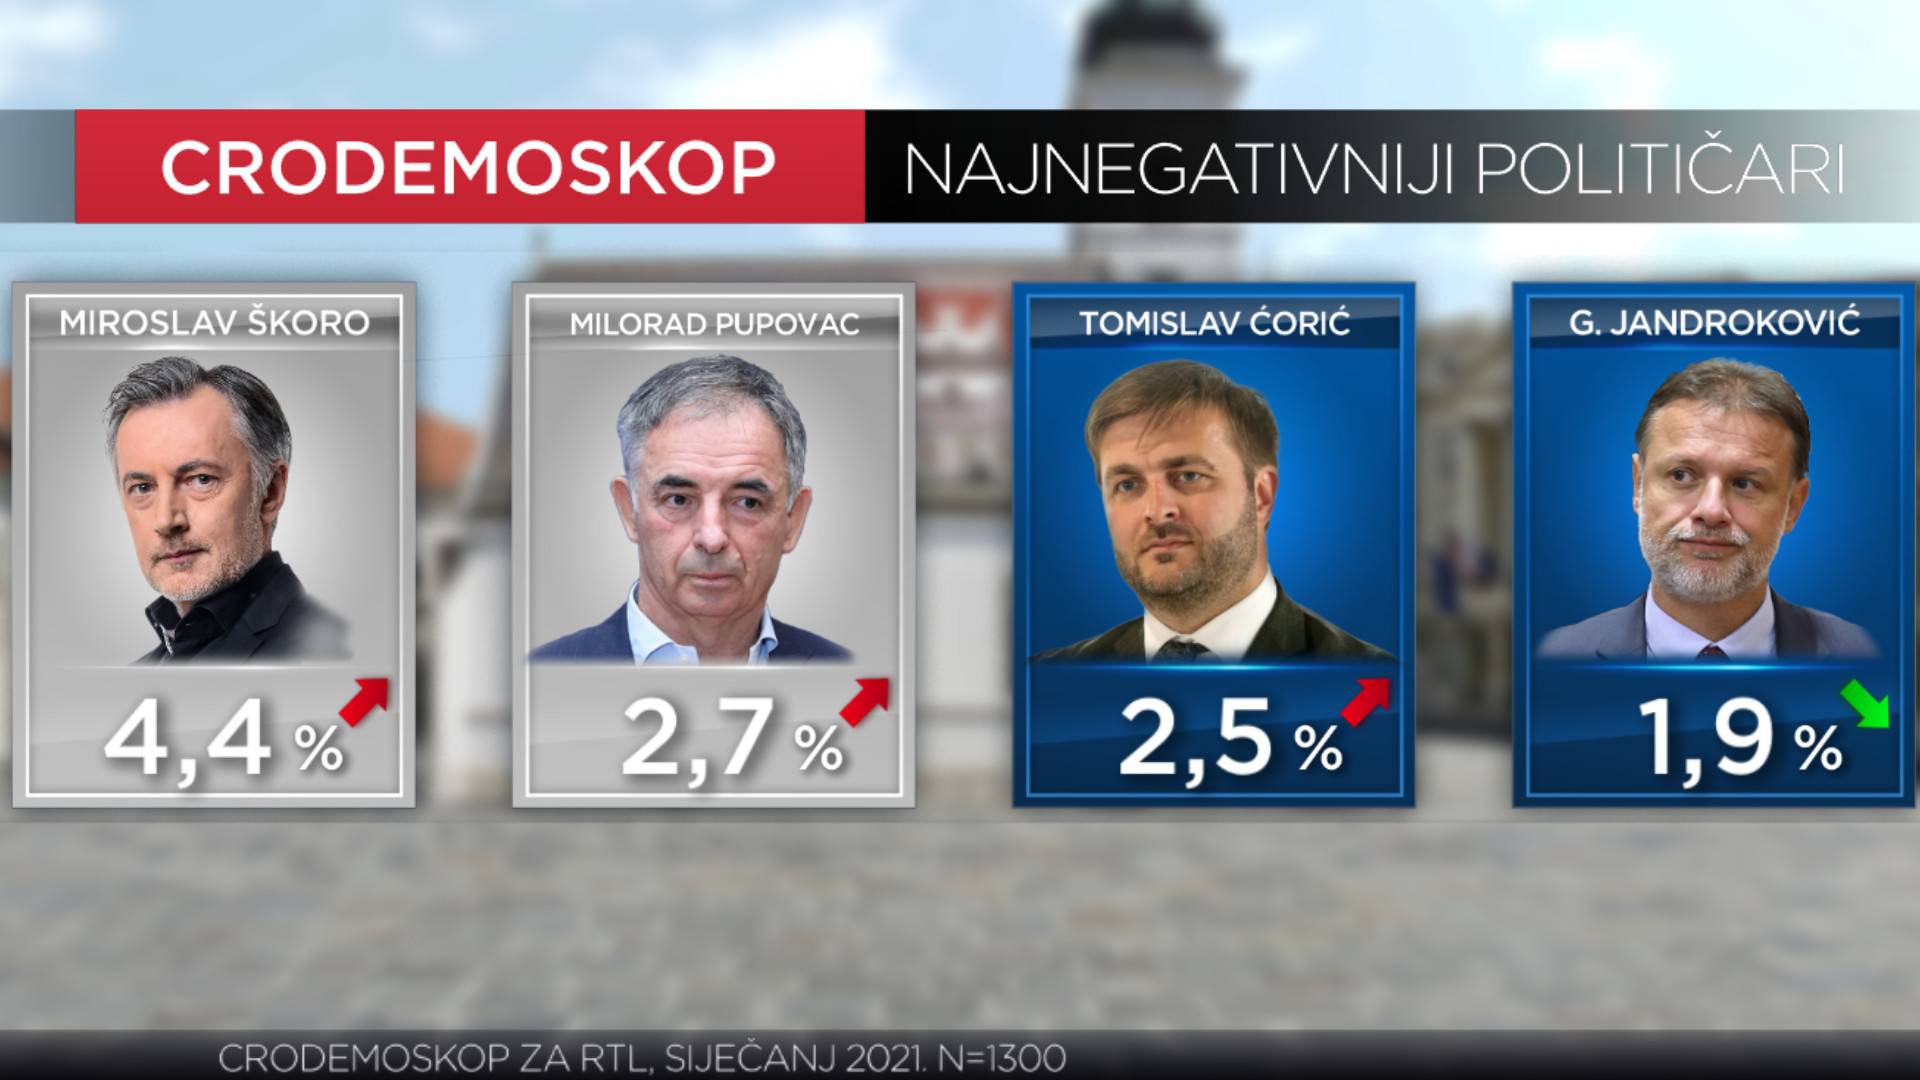 Plenkoviću pao rejting, na treće mjesto najpozitivnijih političara došao Tomašević iz Možemo!